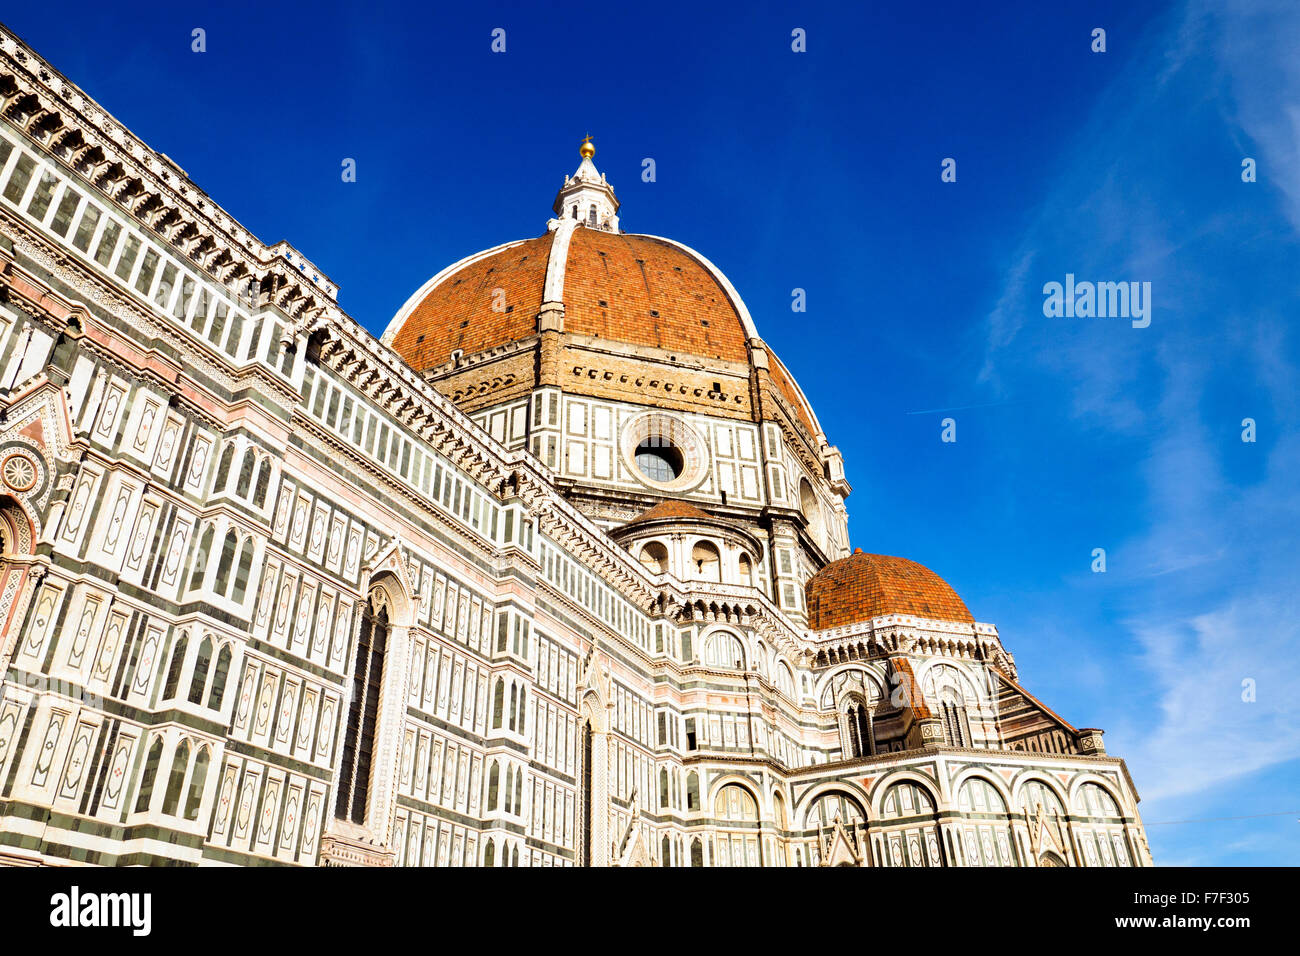 Giotto's dome of the Cattedrale di Santa Maria del Fiore  - Florence, Italy Stock Photo